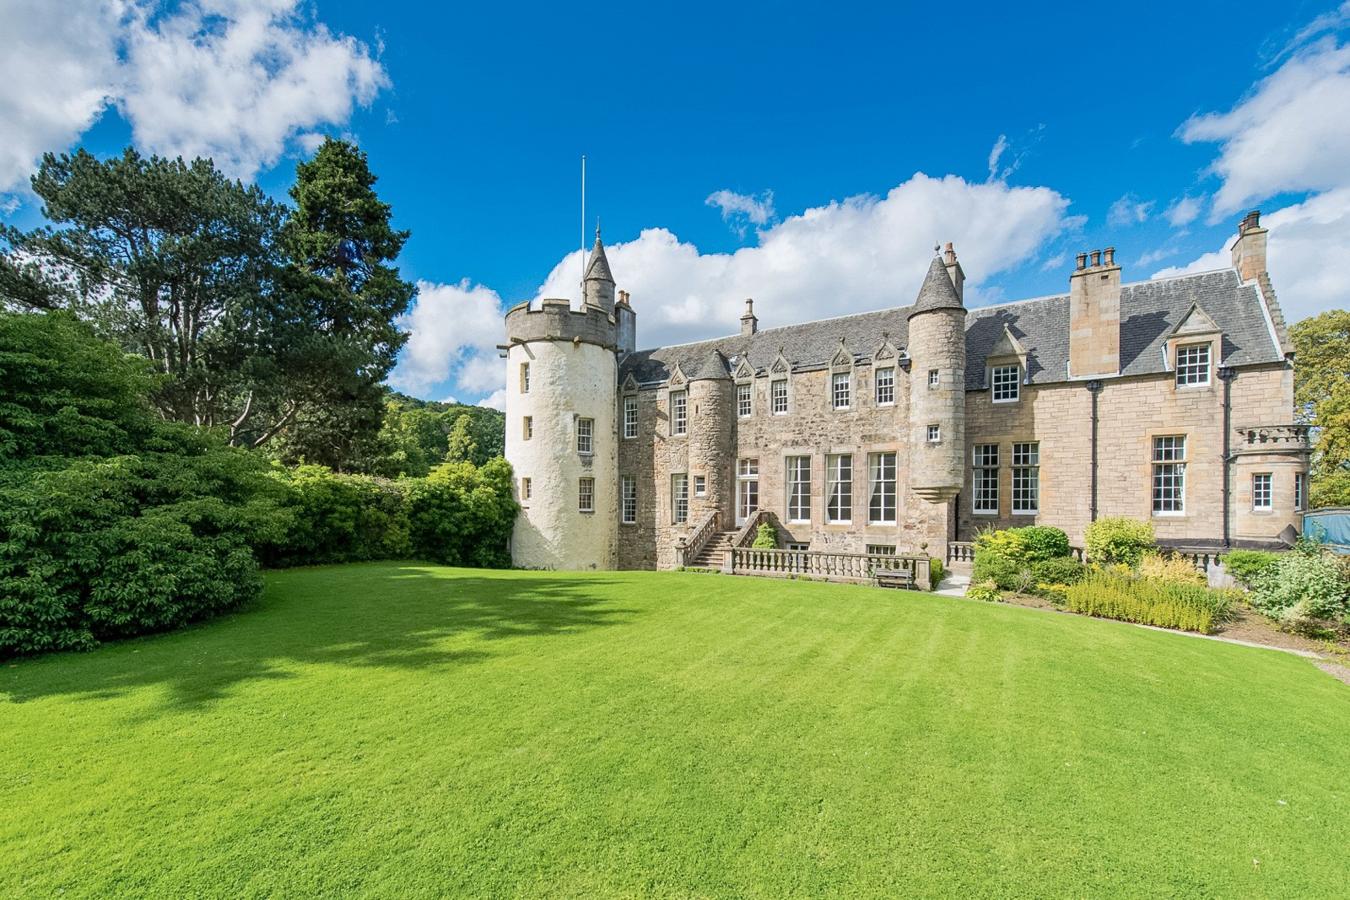 Castillo de Craigcrook, Escocia. Este espectacular castillo está situado en Edimburgo en plena naturaleza, fue construido en 1542 por William Adamson y pasó por numerosas manos hasta ser donado a la caridad en 1719